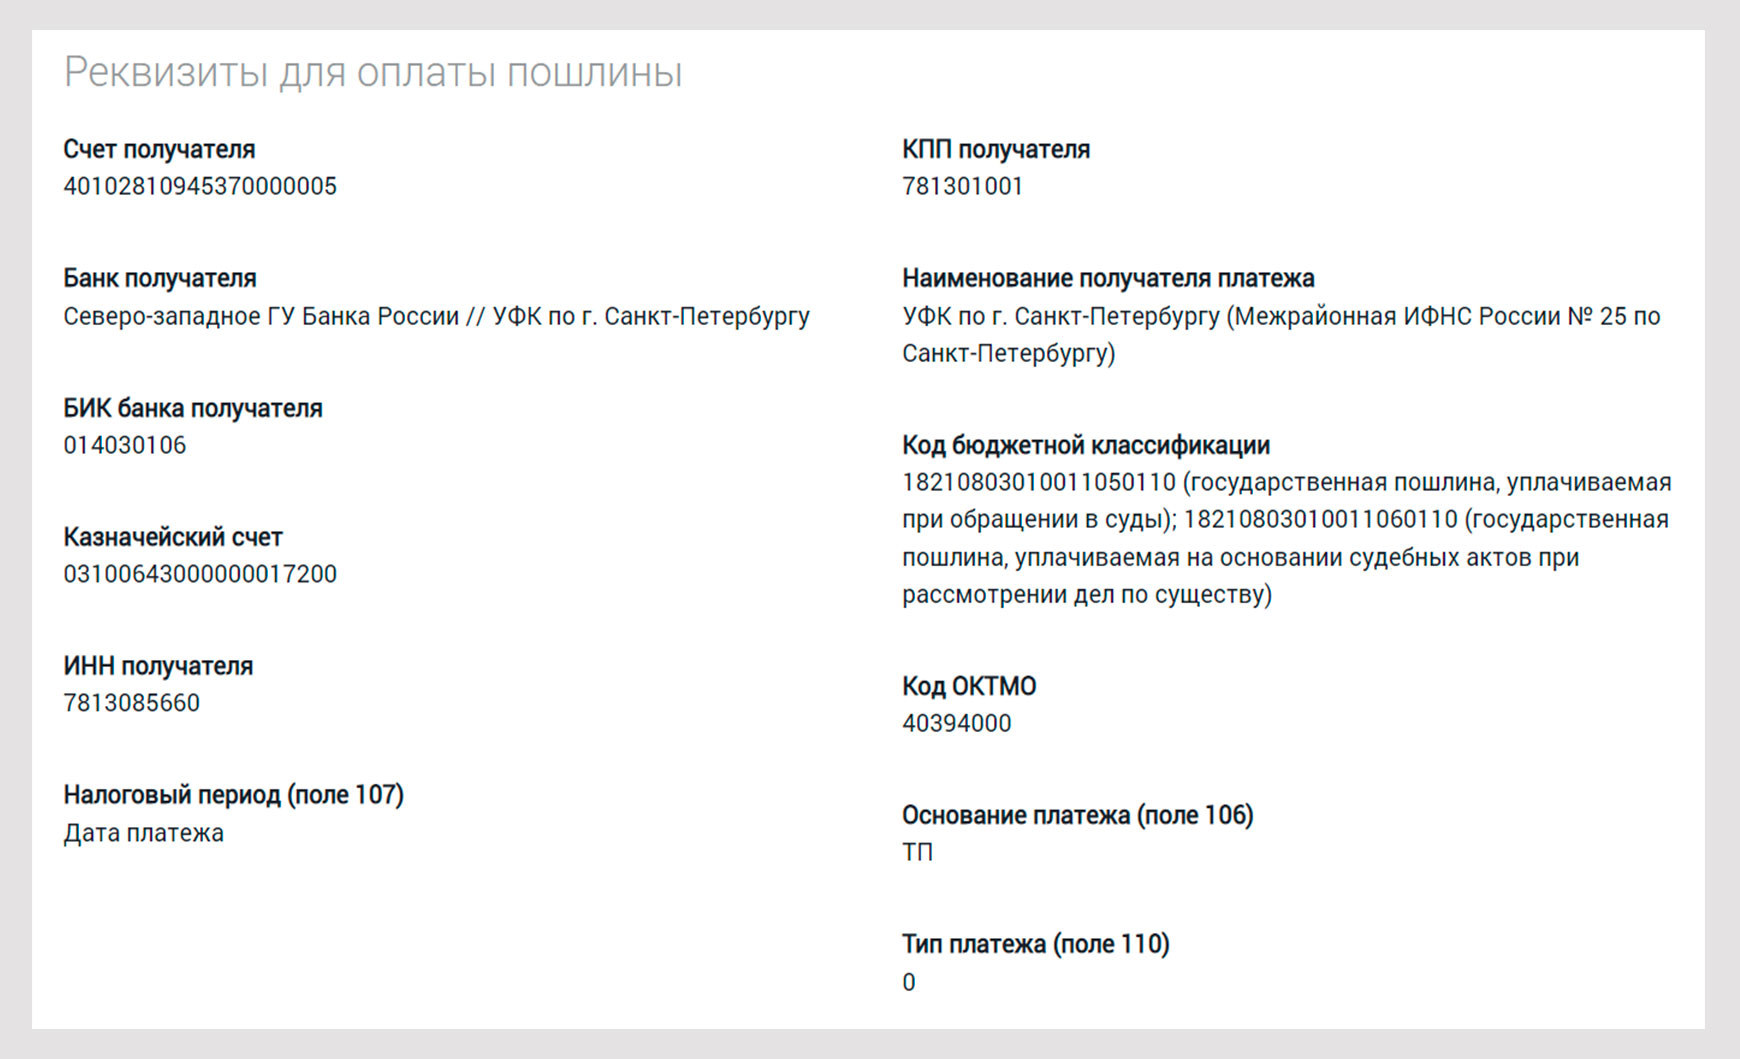 Реквизиты для оплаты пошлины по 146 судебному участку СПб.